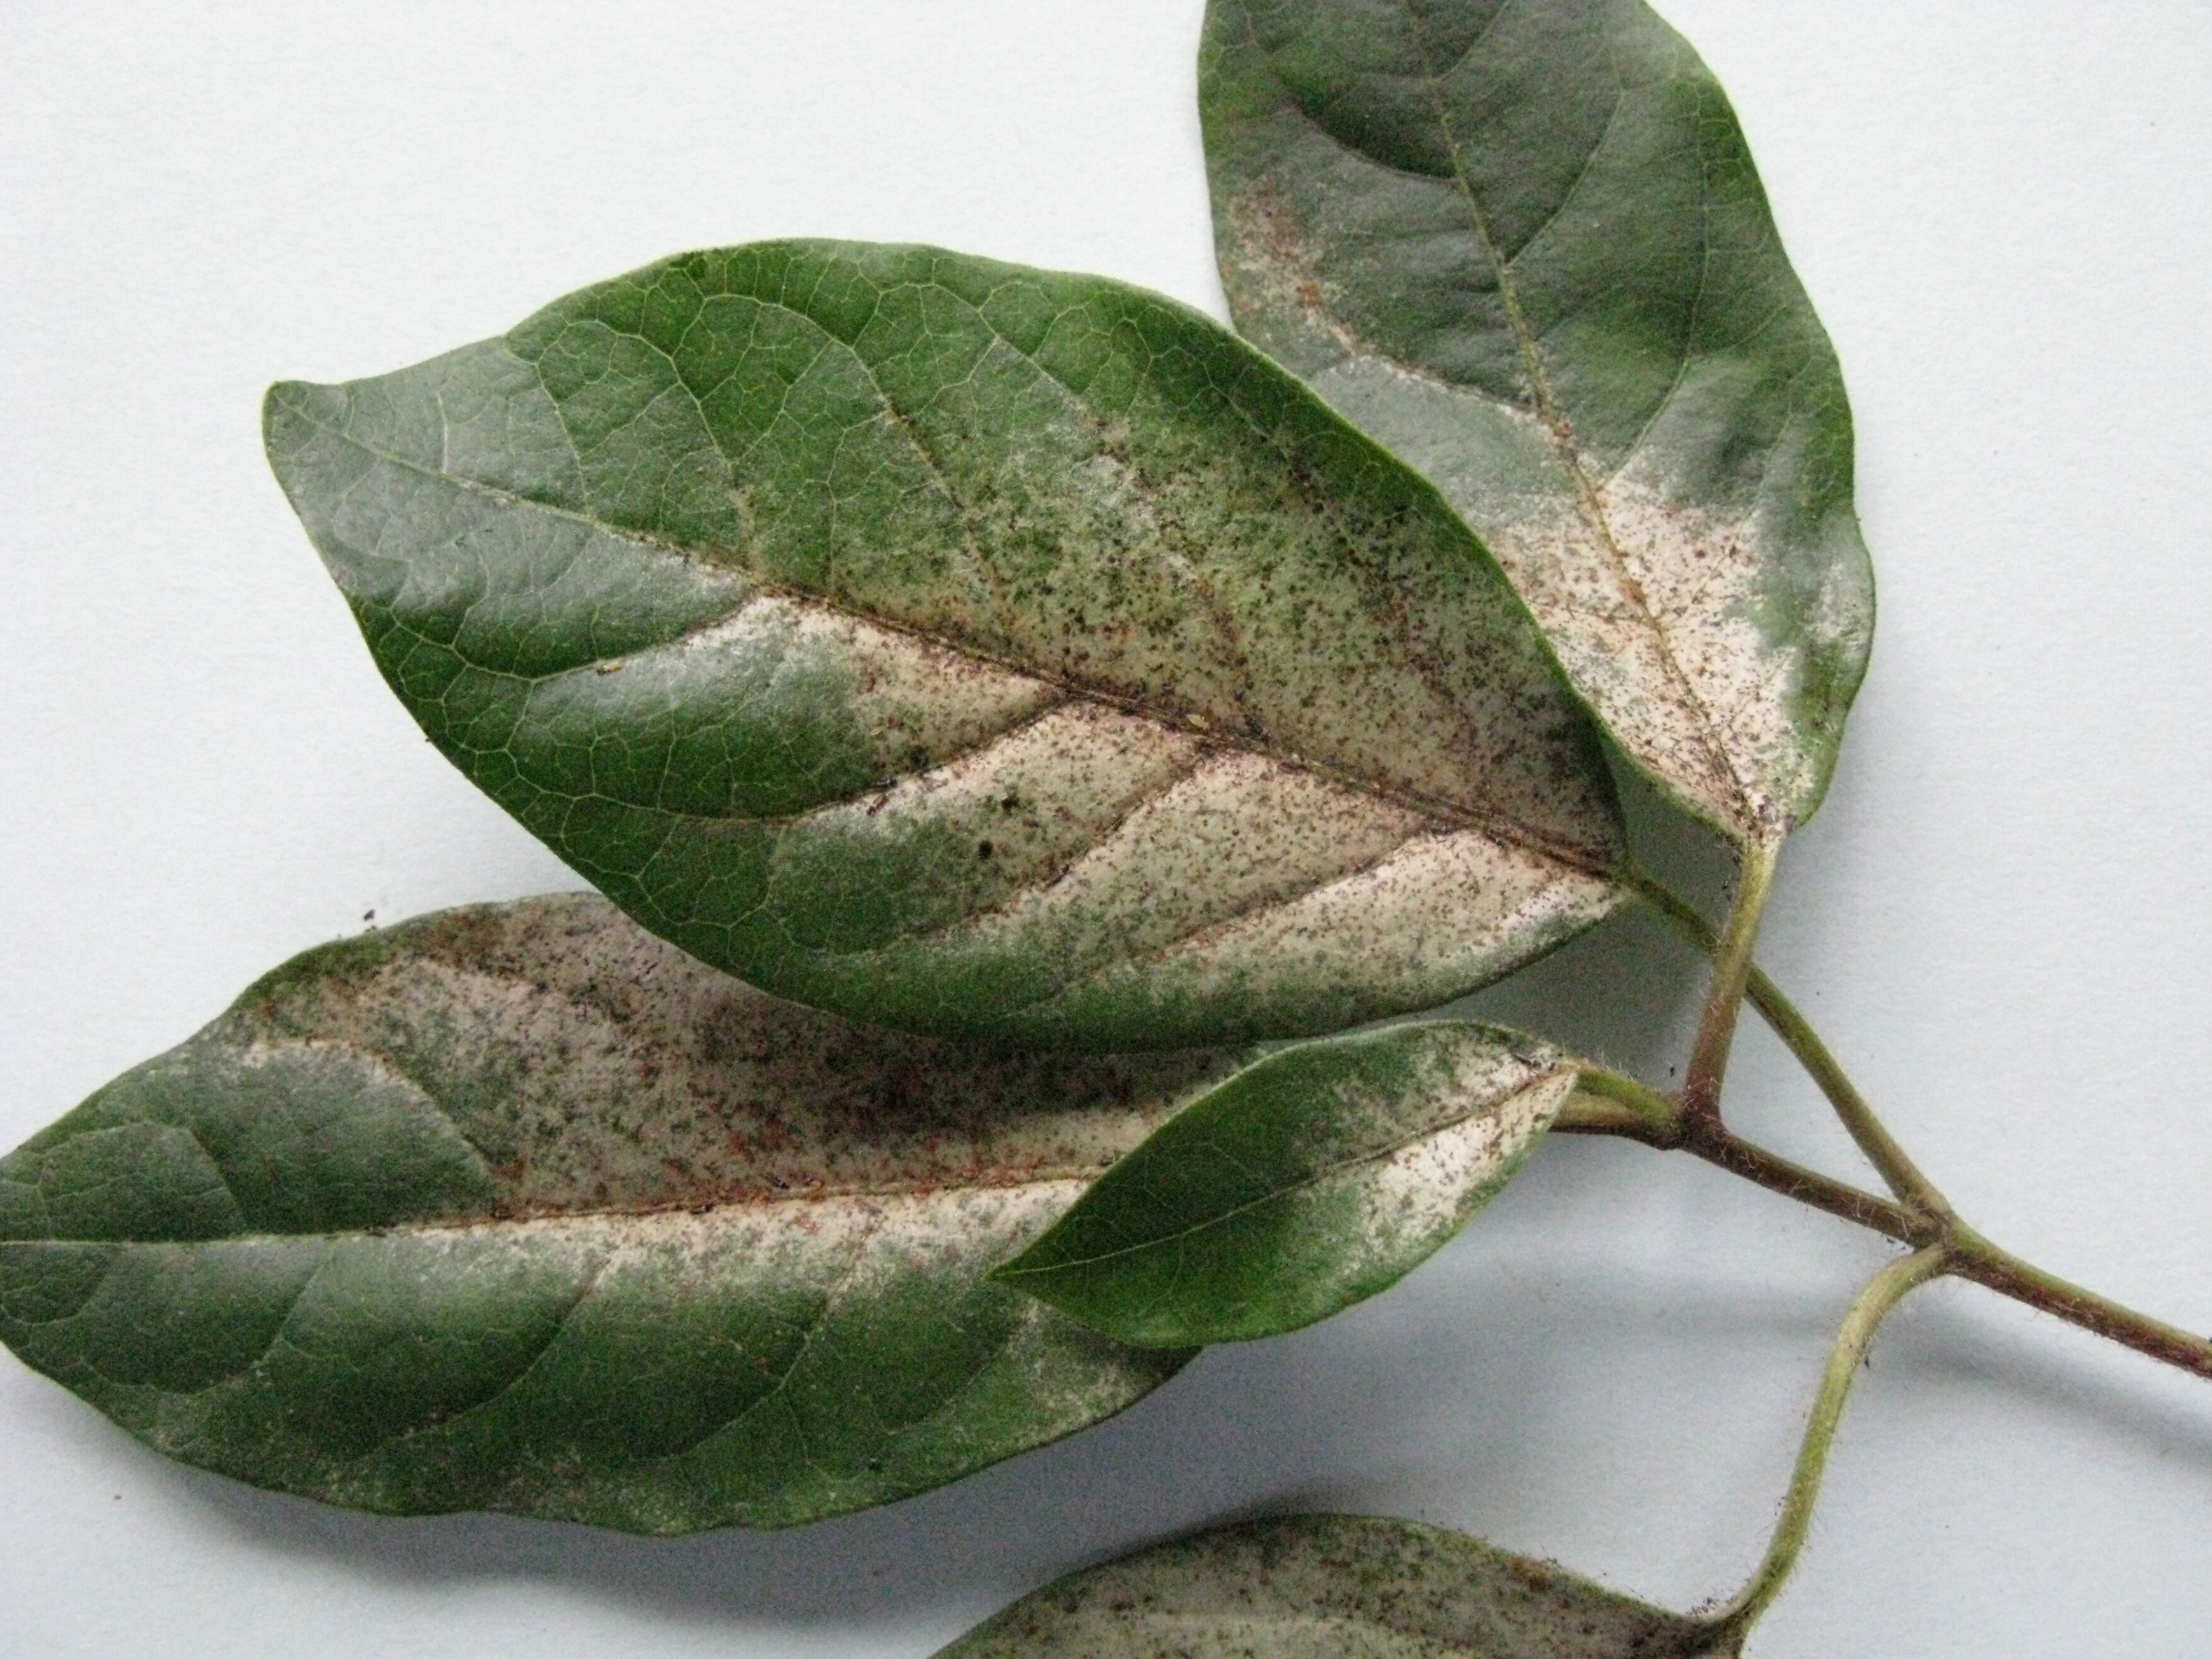 Glasshouse thrips on Viburnum tinus leaves (Andrew Halstead/RHS/PA)